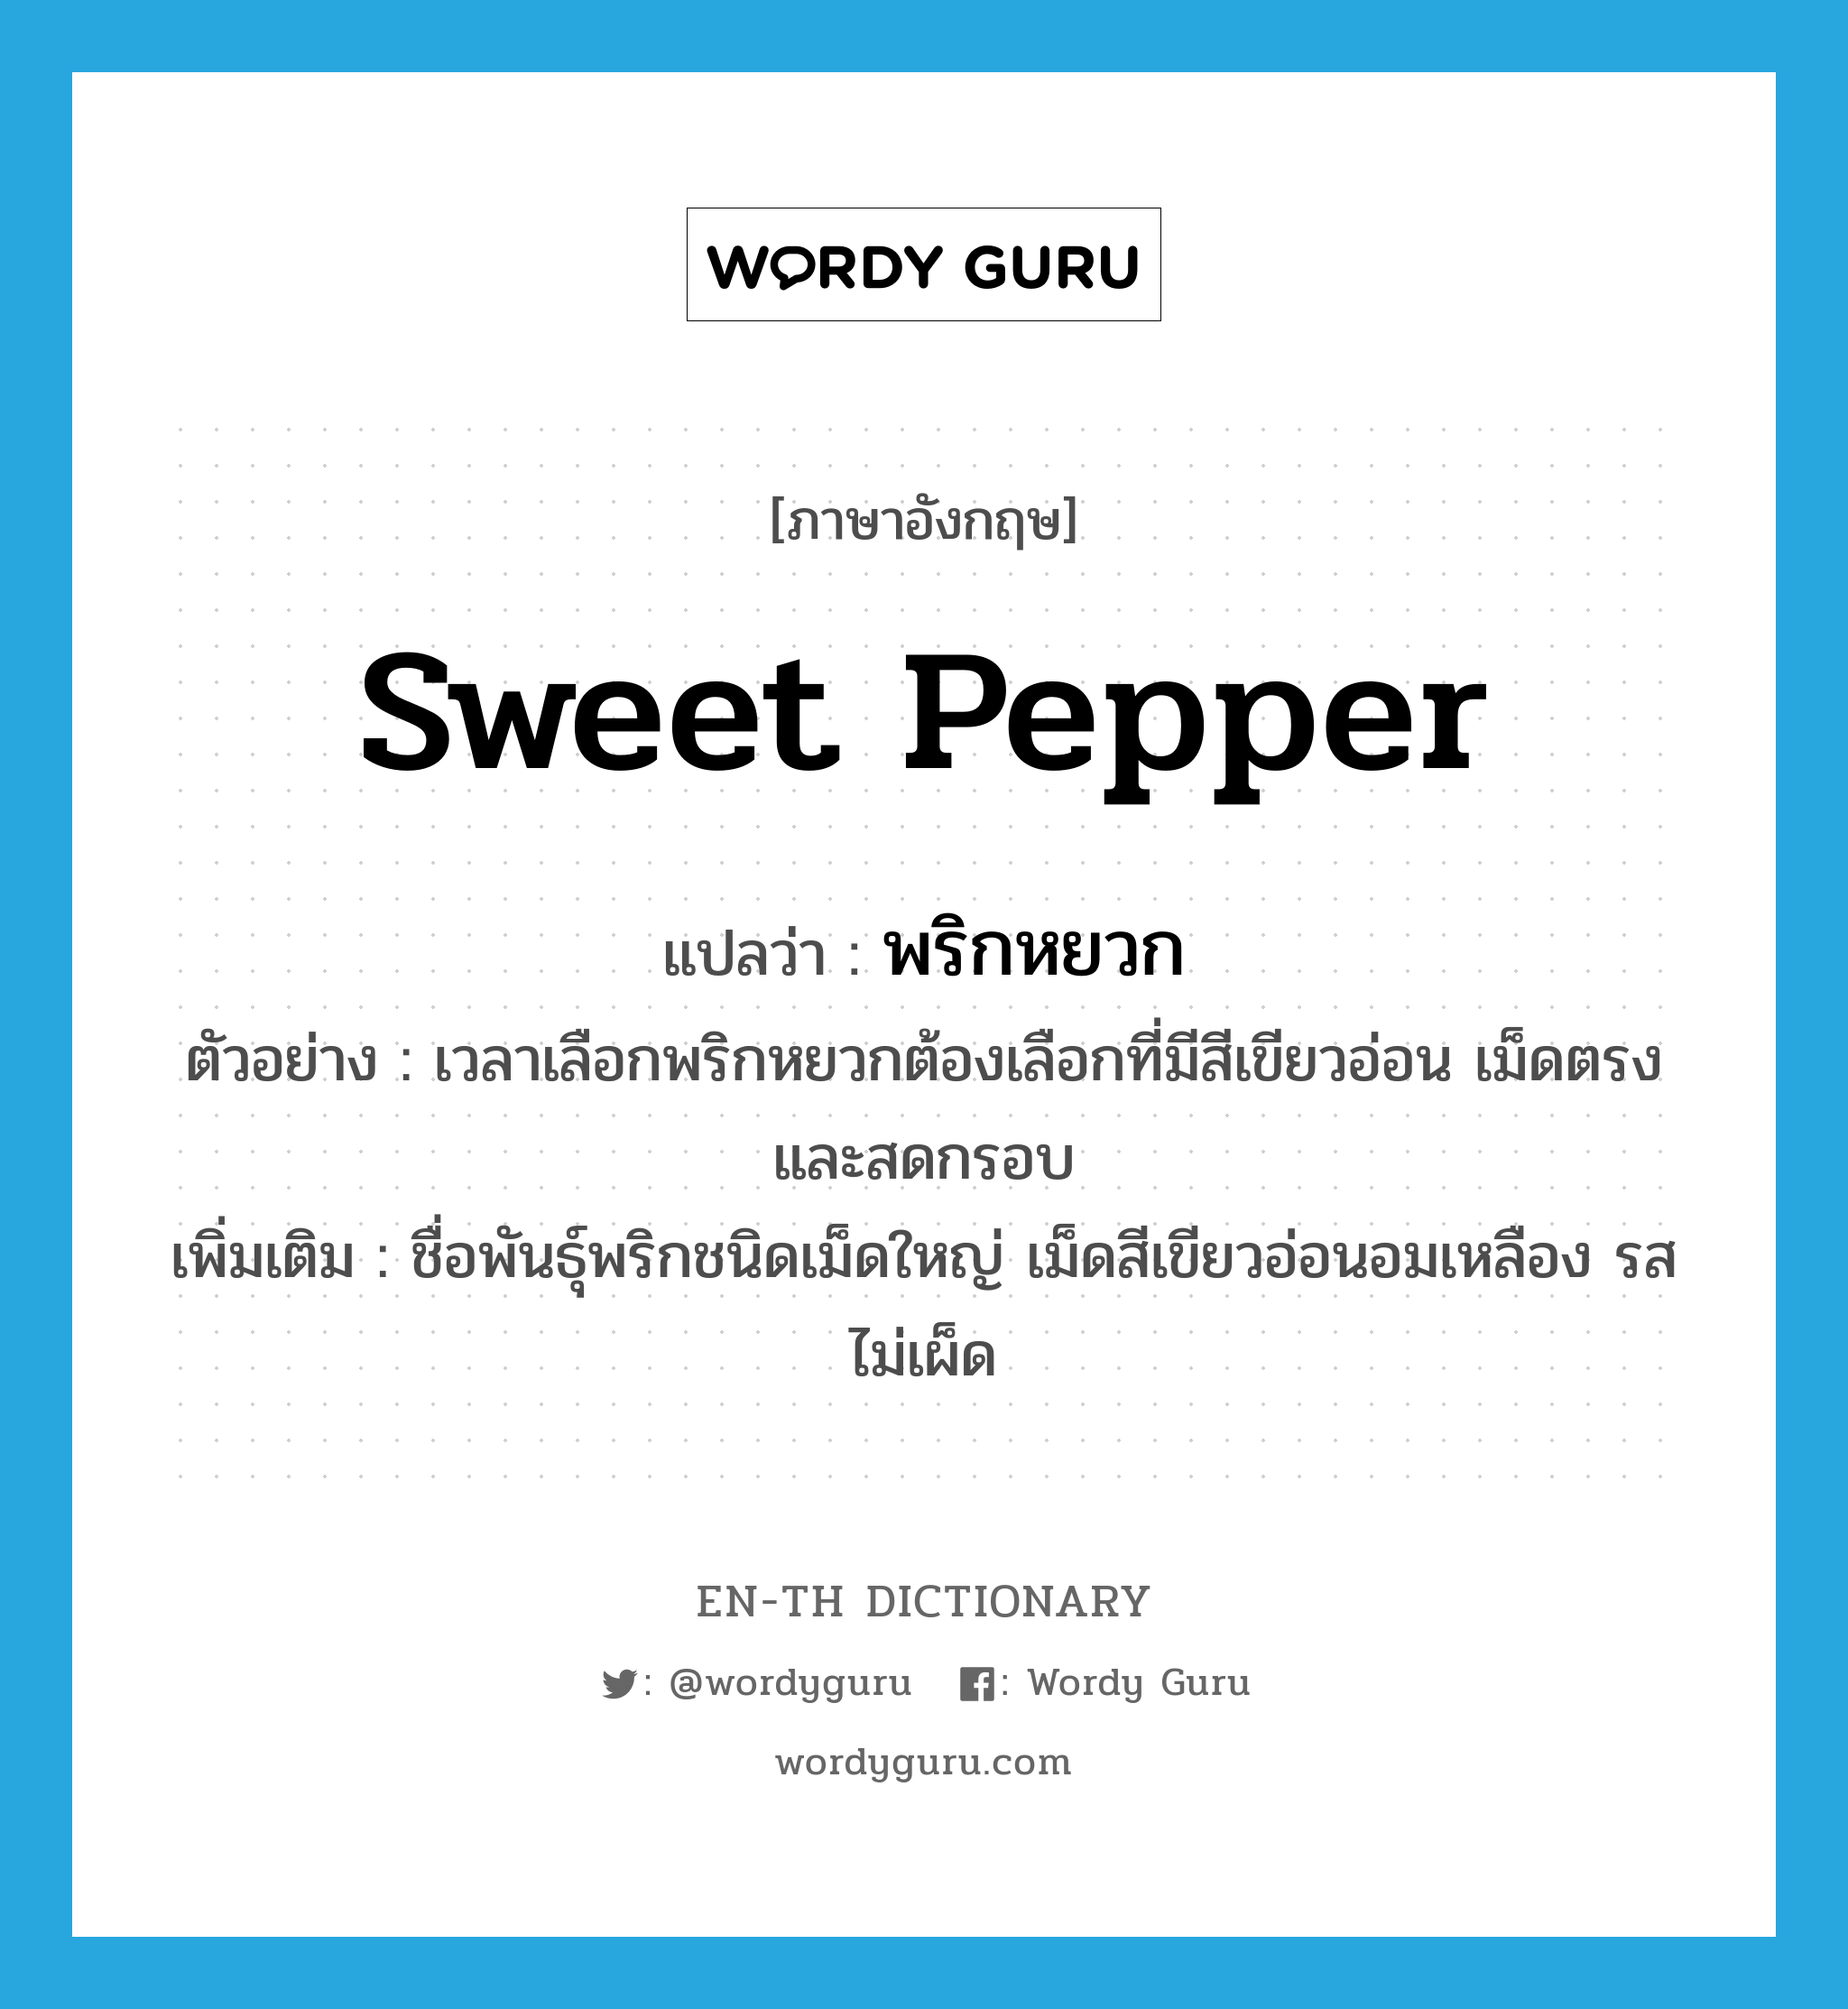 sweet pepper แปลว่า?, คำศัพท์ภาษาอังกฤษ sweet pepper แปลว่า พริกหยวก ประเภท N ตัวอย่าง เวลาเลือกพริกหยวกต้องเลือกที่มีสีเขียวอ่อน เม็ดตรงและสดกรอบ เพิ่มเติม ชื่อพันธุ์พริกชนิดเม็ดใหญ่ เม็ดสีเขียวอ่อนอมเหลือง รสไม่เผ็ด หมวด N